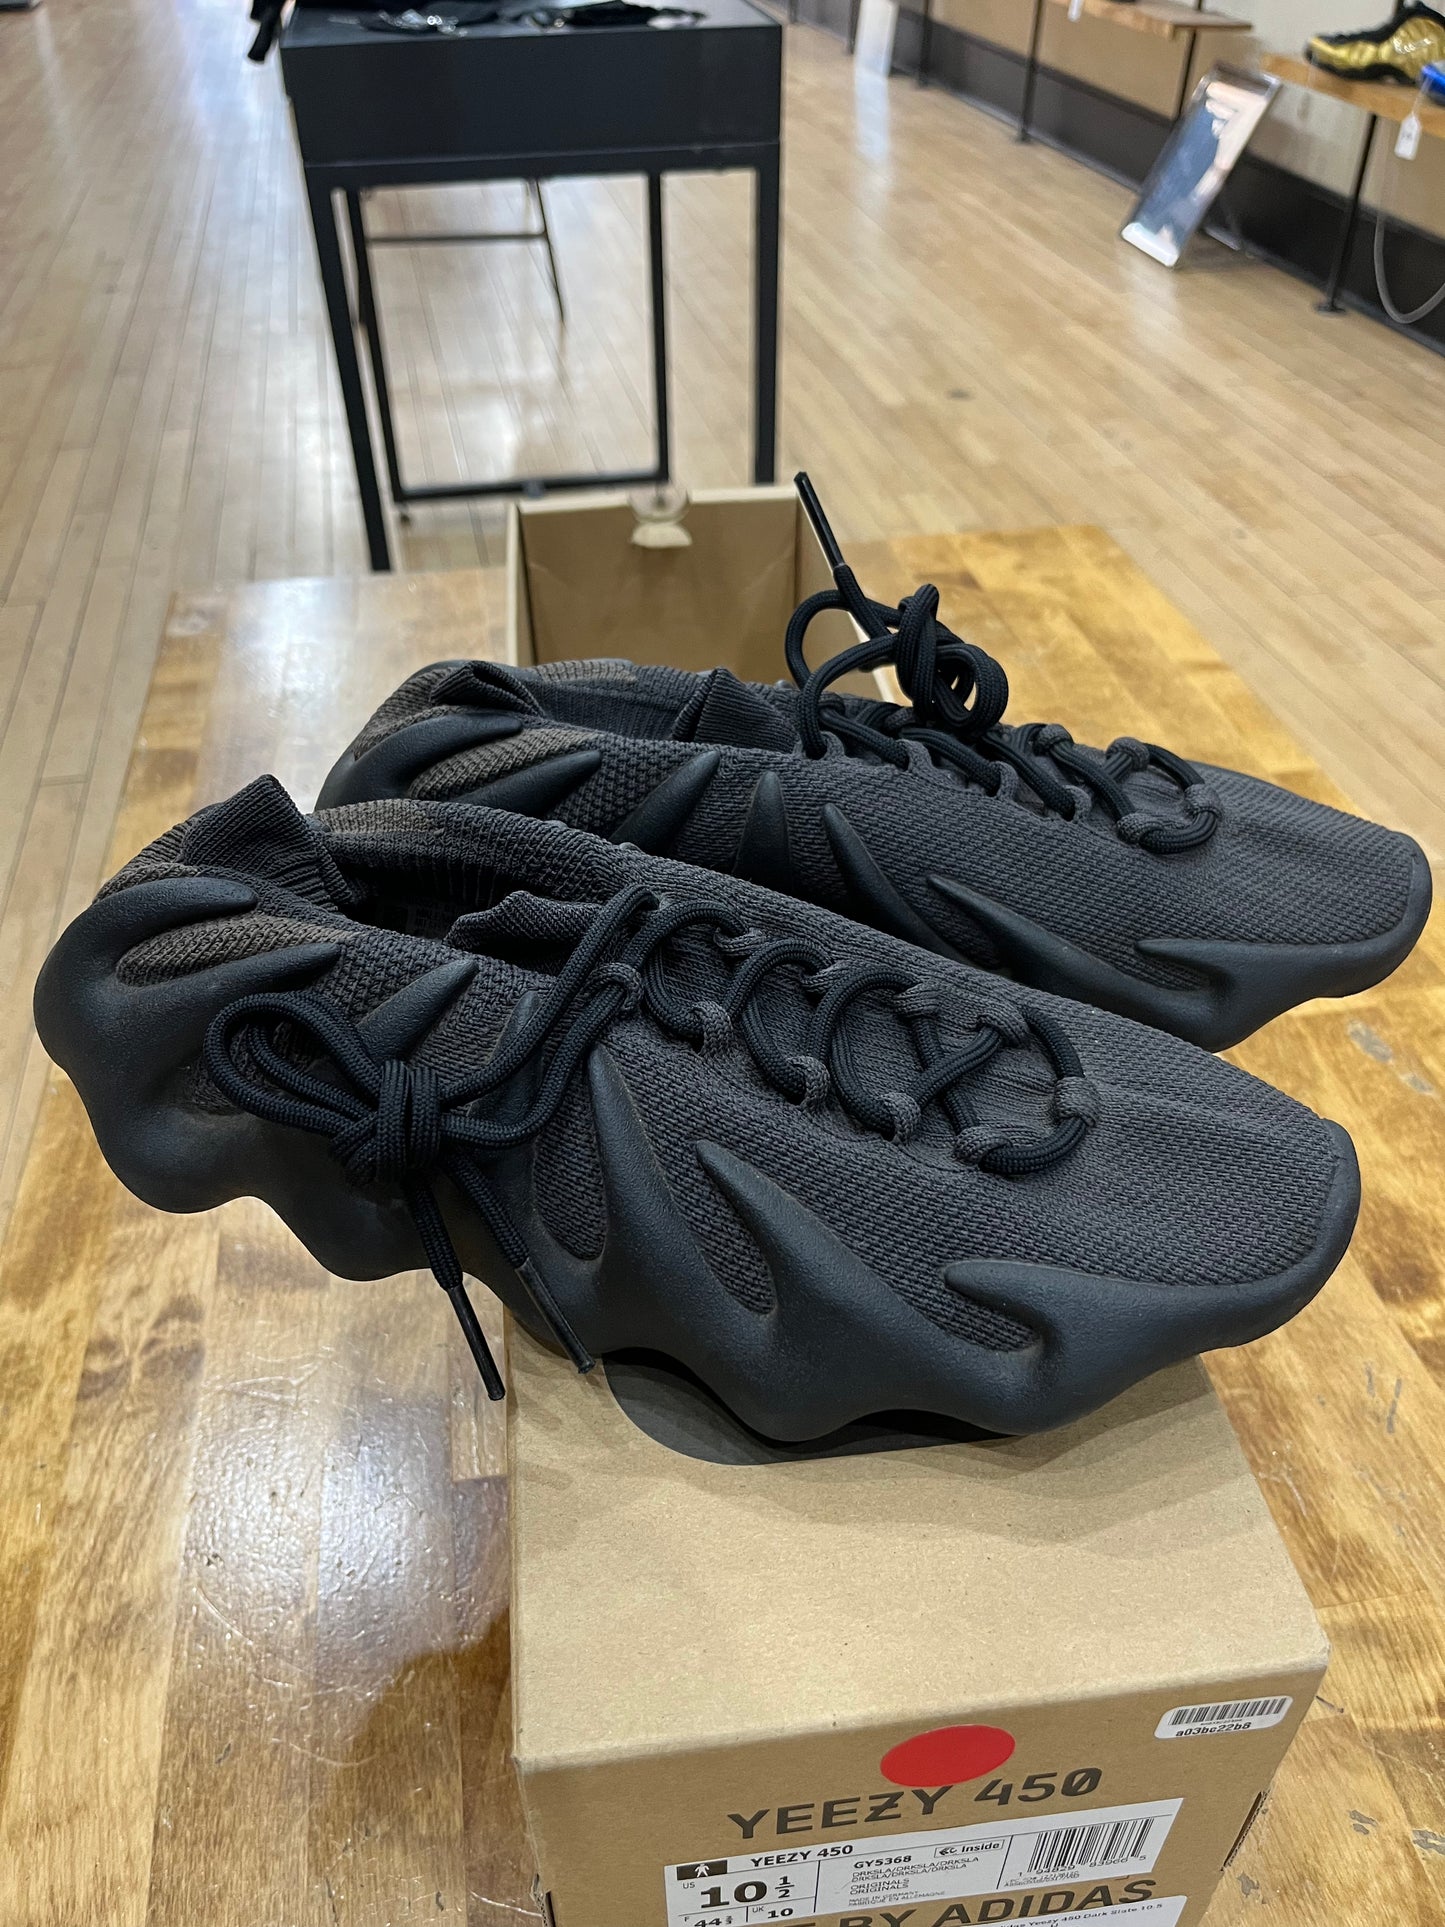 Yeezy 450 Size 10.5 (TRUSTEDCLUB) (MKE)